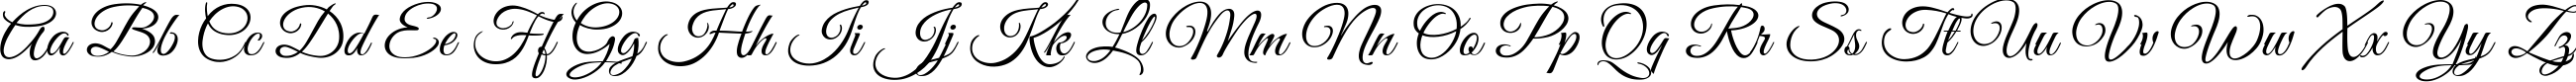 Пример написания английского алфавита шрифтом Good Vibes Pro